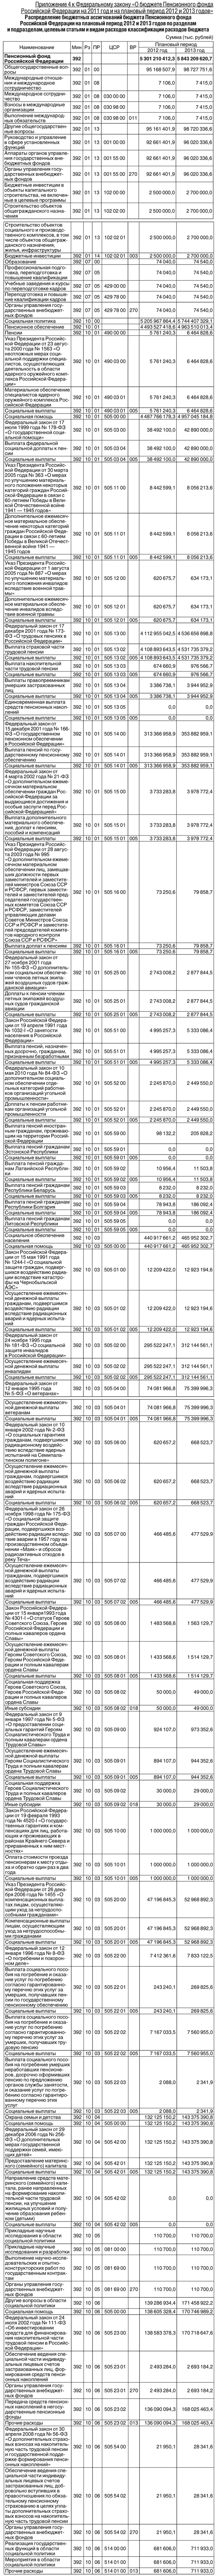 Приложение 4 к Федеральному закону «О бюджете Пенсионного фонда Российской Федерации на 2011 год и на плановый период 2012 и 2013 годов» 